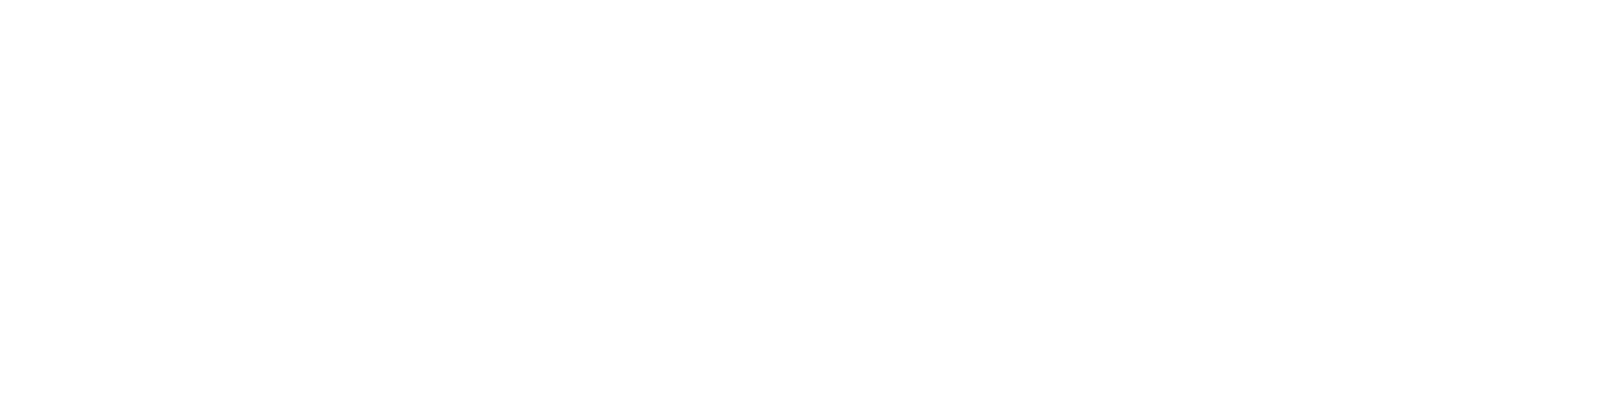 Mayday「Just Rock It 2015 TOKYO」at 日本武道館